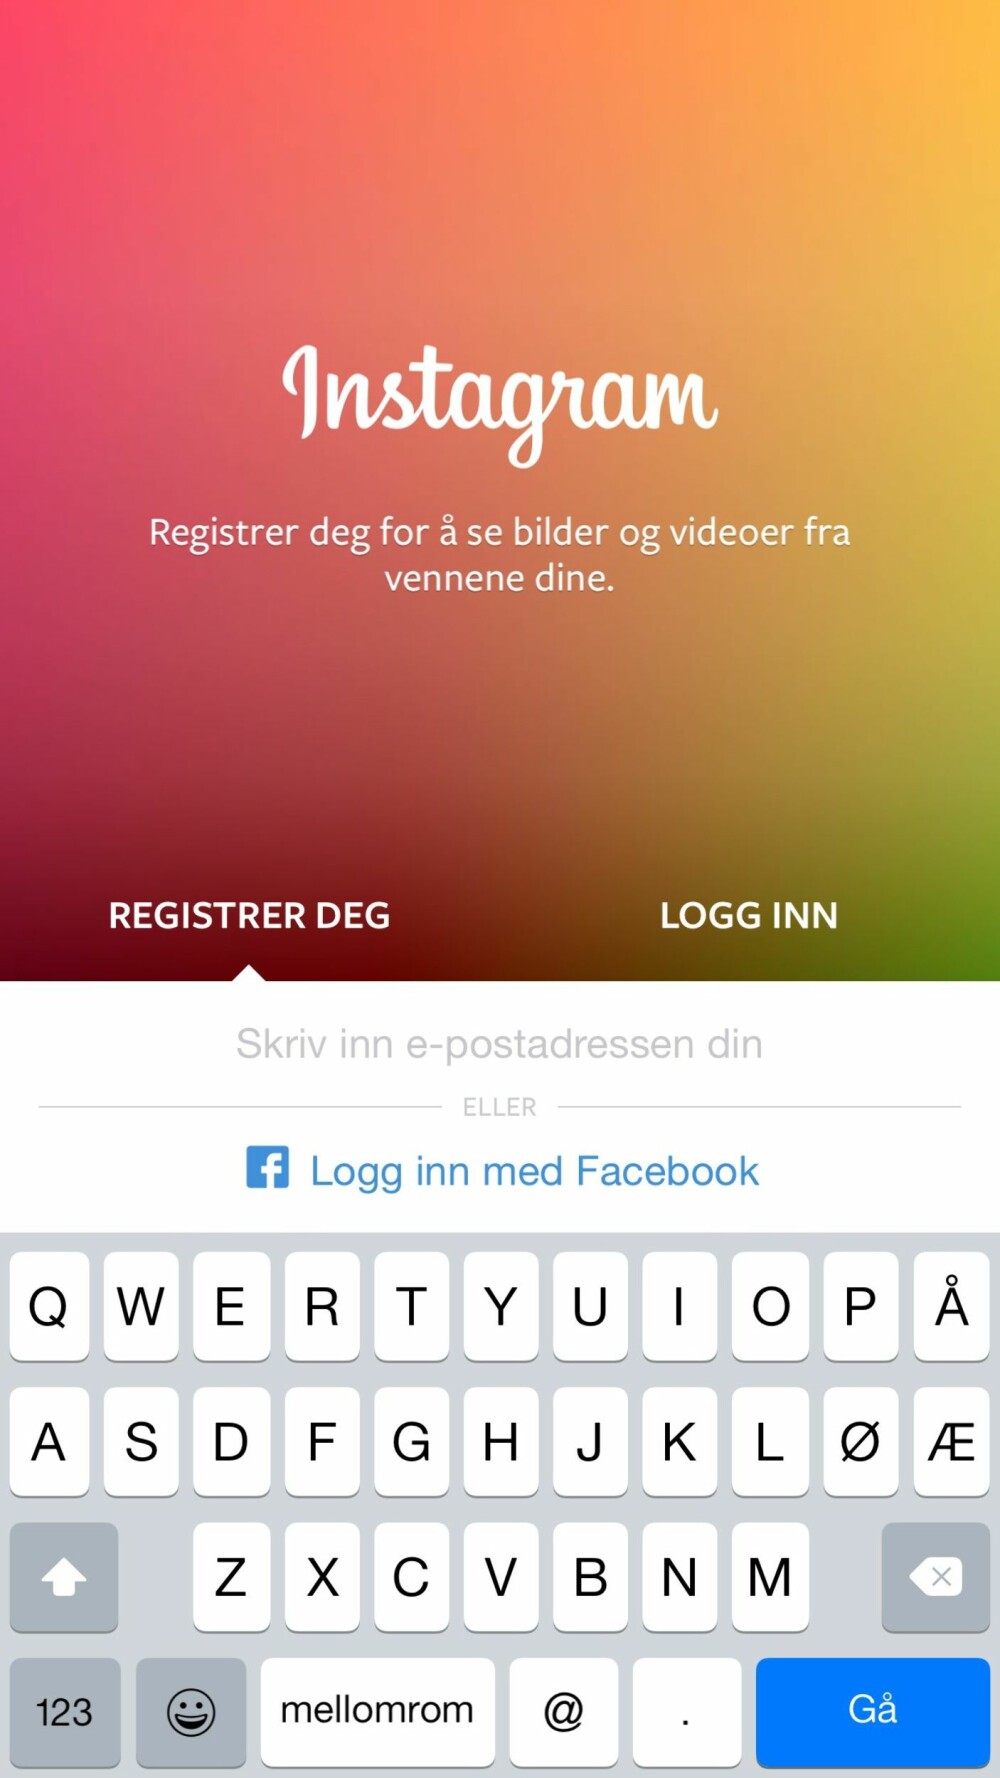 LOGG INN: Du kan logge inn på Instagram med Facebook-kontoen din eller du kan opprette en ny konto.